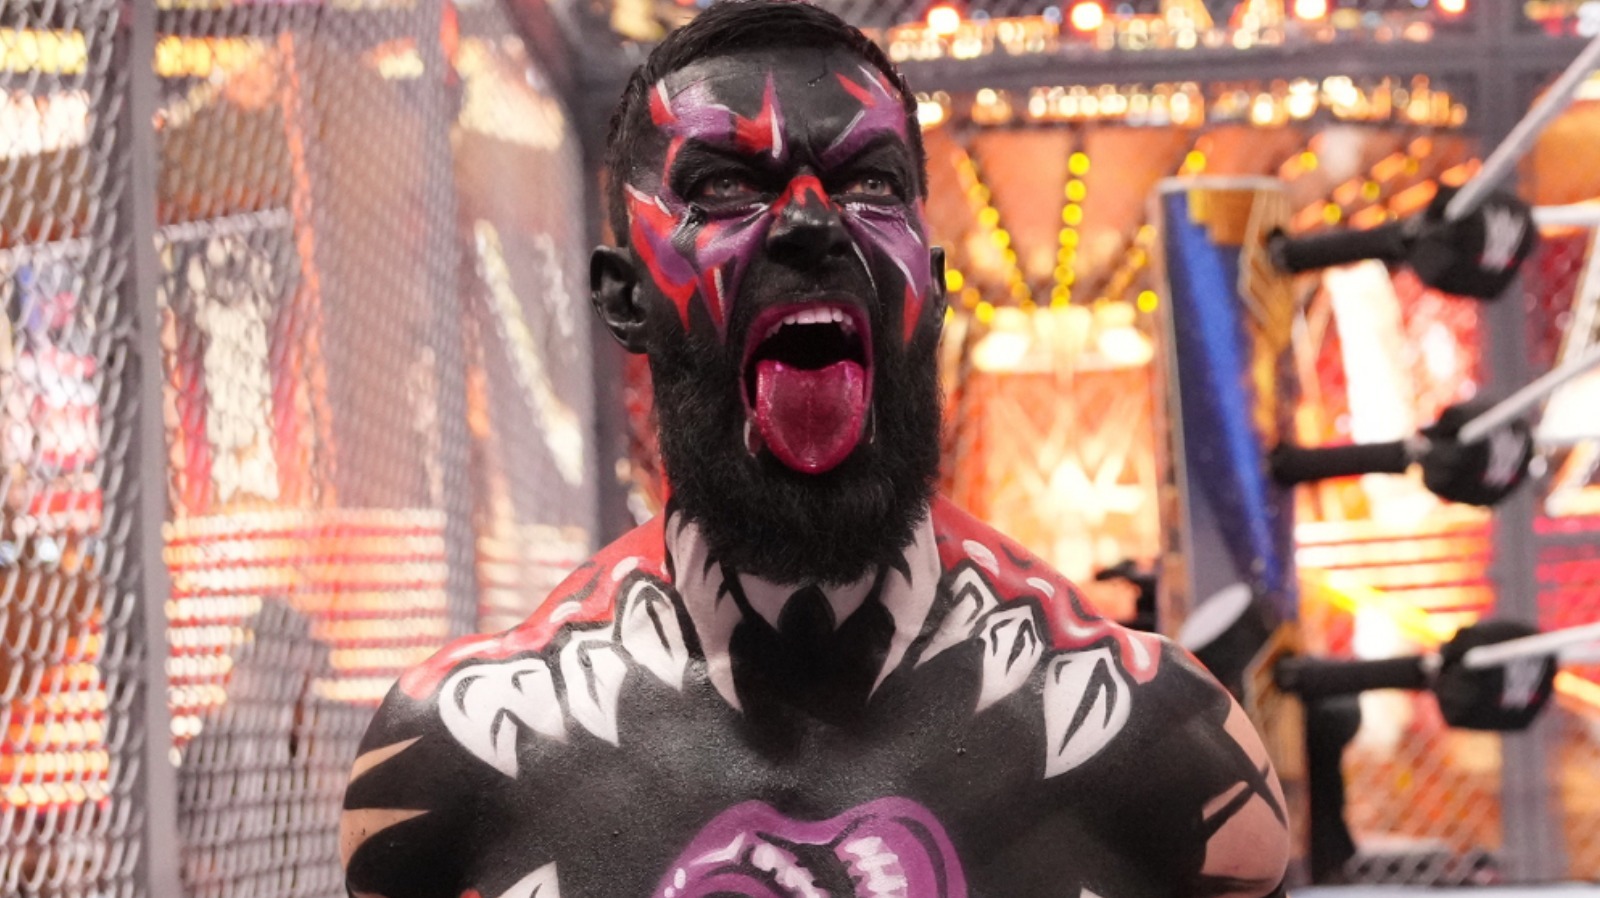 Según los informes, se suponía que el partido de WWE WrestleMania 39 entre Edge y Finn Balor duraría más